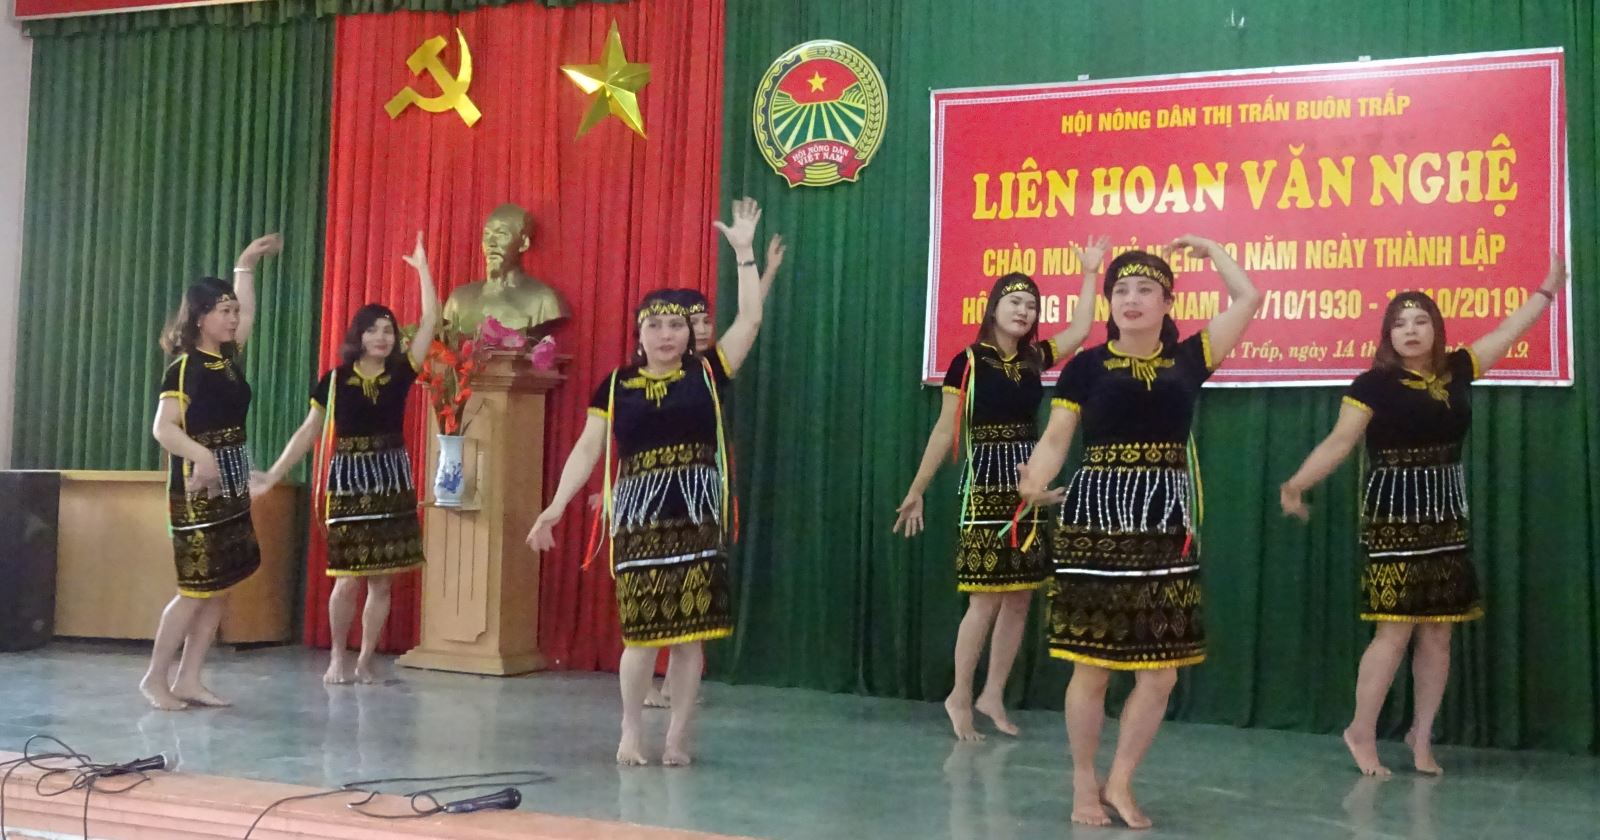 Liên hoan văn nghệ chào mừng 89 năm Ngày thành lập Hội Nông dân Việt Nam (14/10/1930 – 14/10/2019)